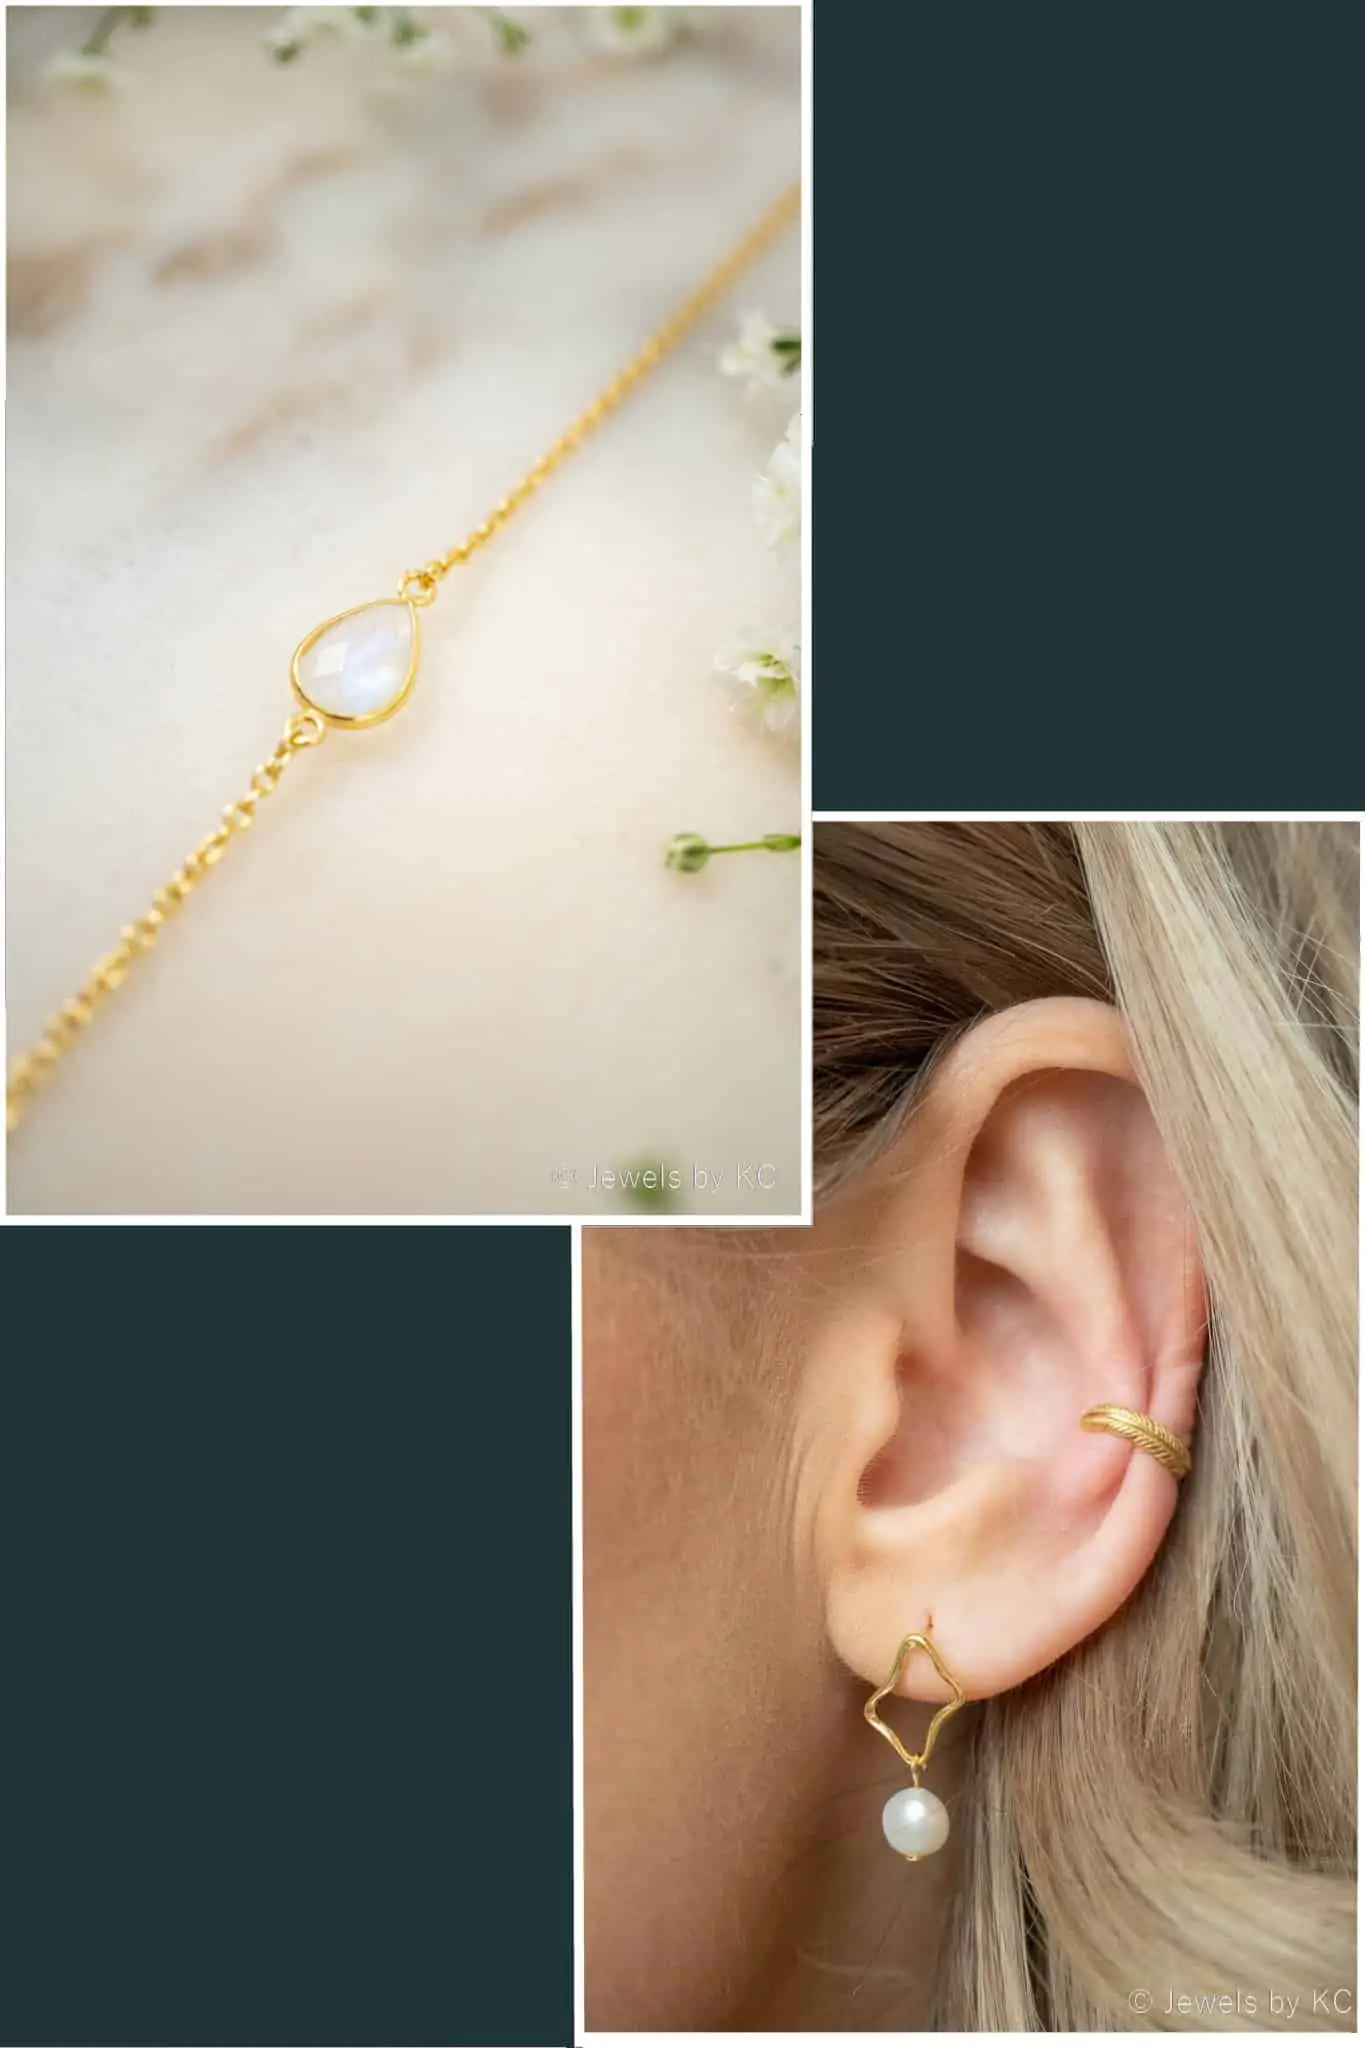 sokken Middel Koor Gouden armband & oorbellen edelsteen sieraden set 'Moonstone & Pearl' van  Goud op Zilver - Jewels by KC